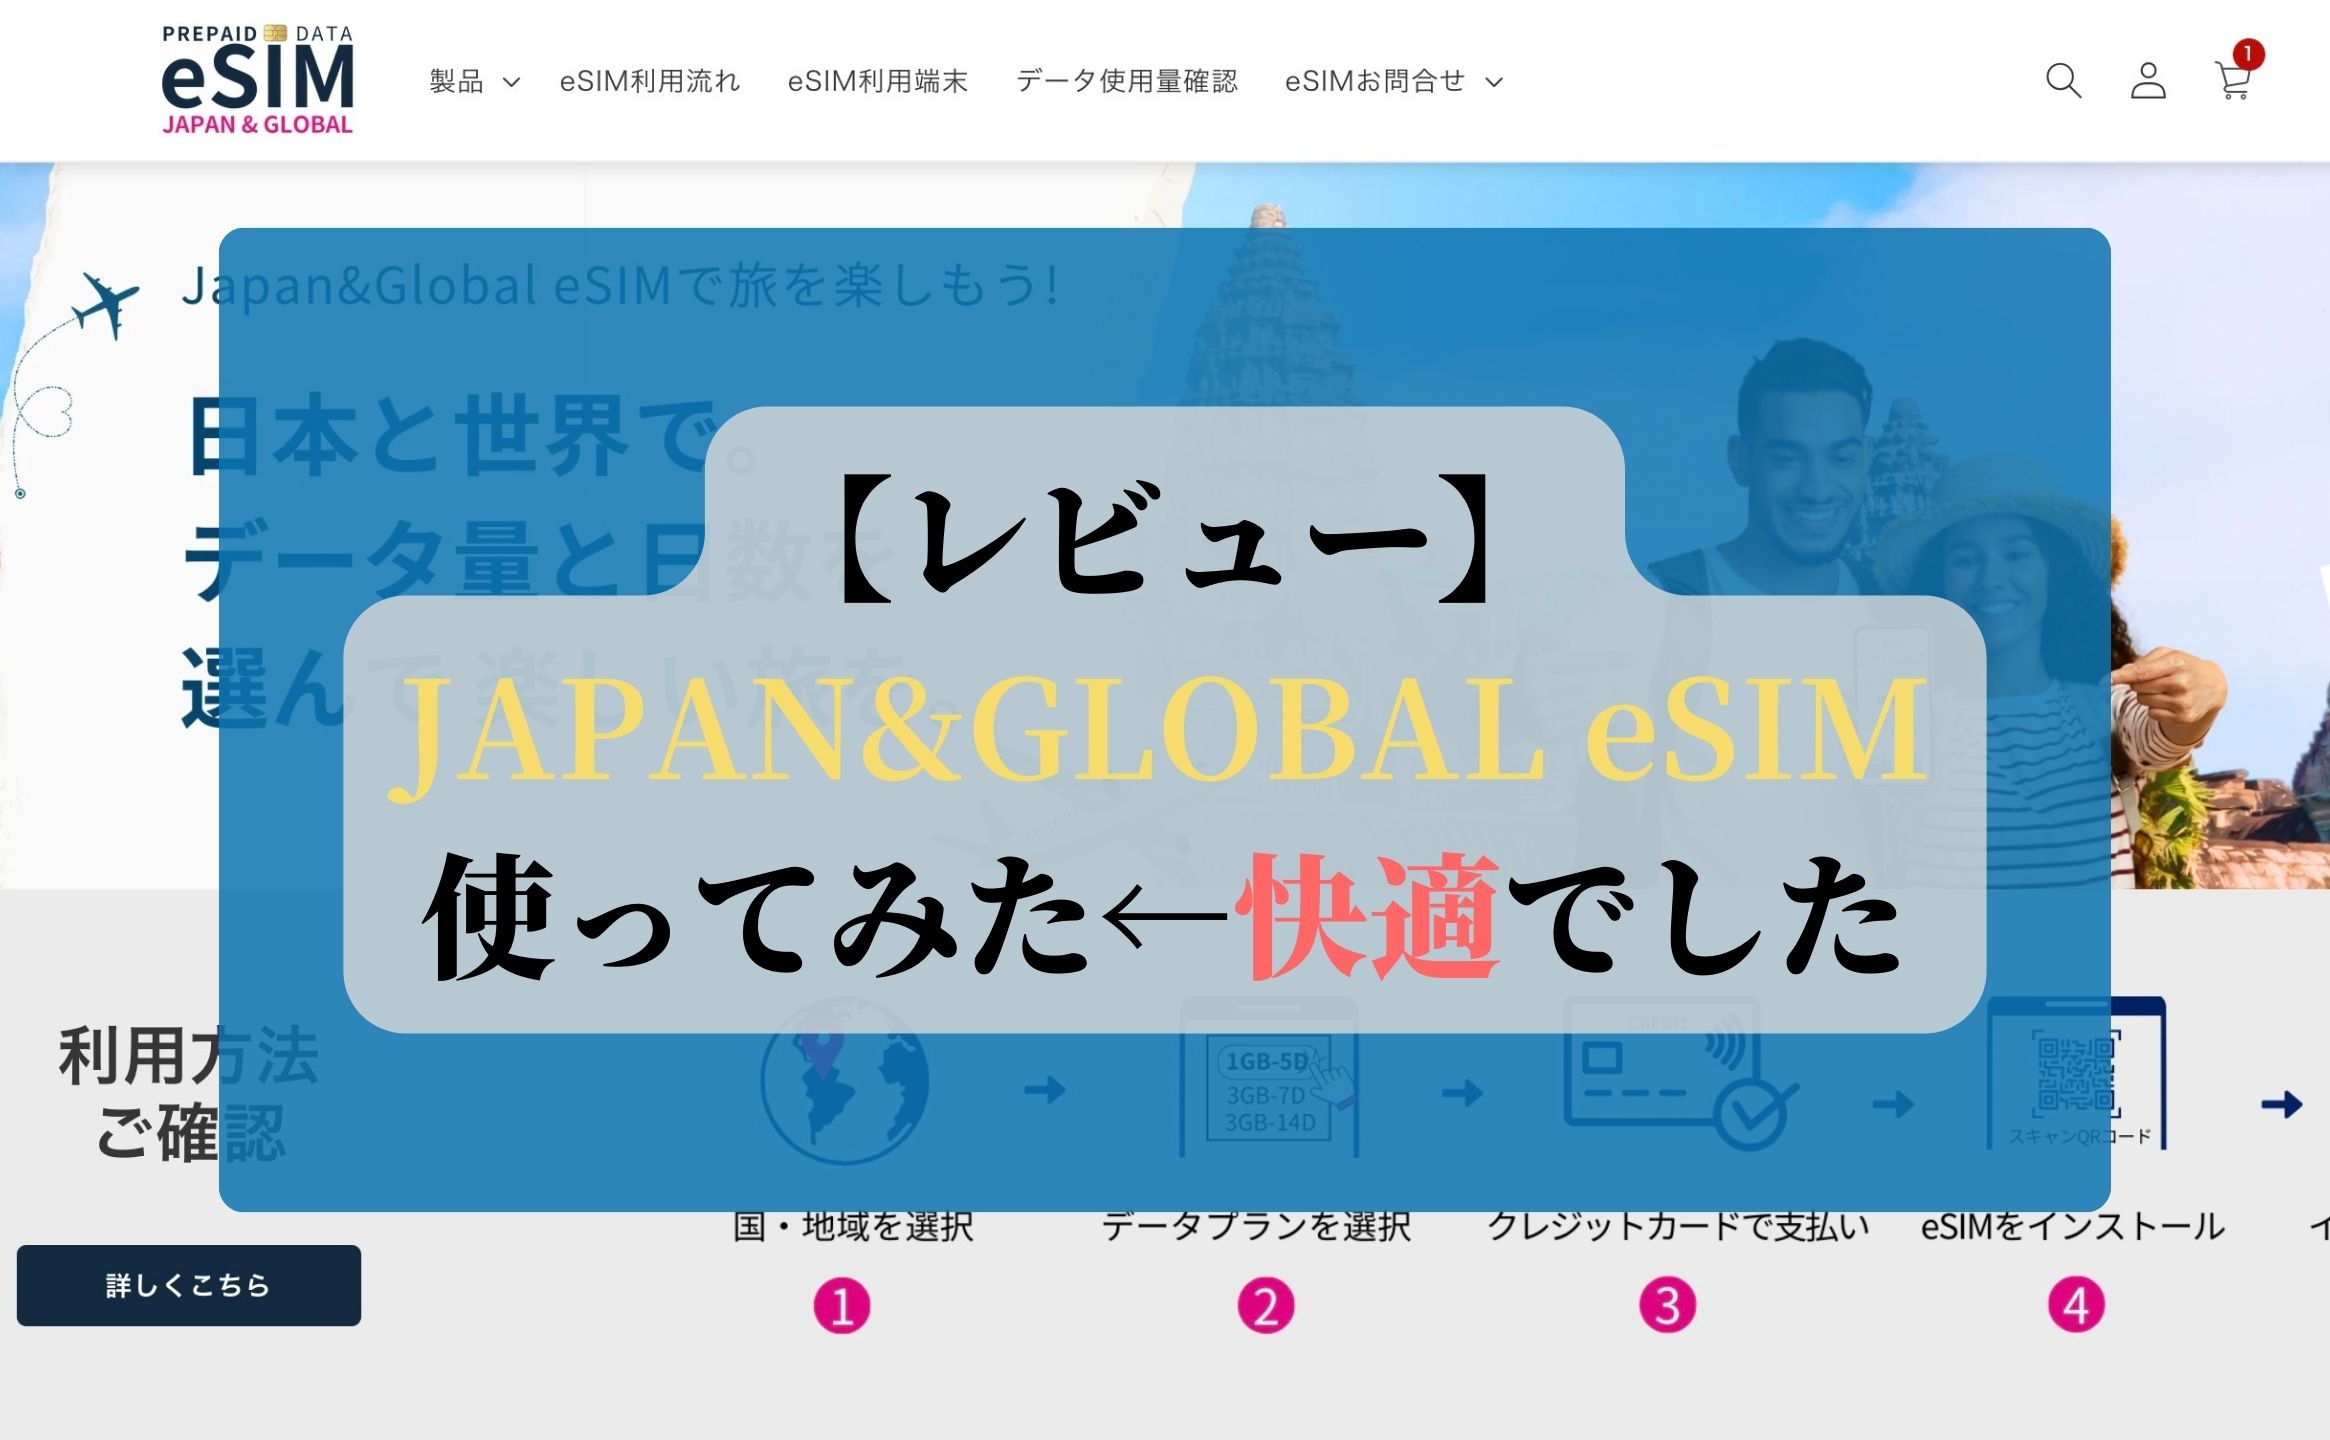 【レビュー】JAPAN&GLOBAL eSIM使ってみた←快適でした